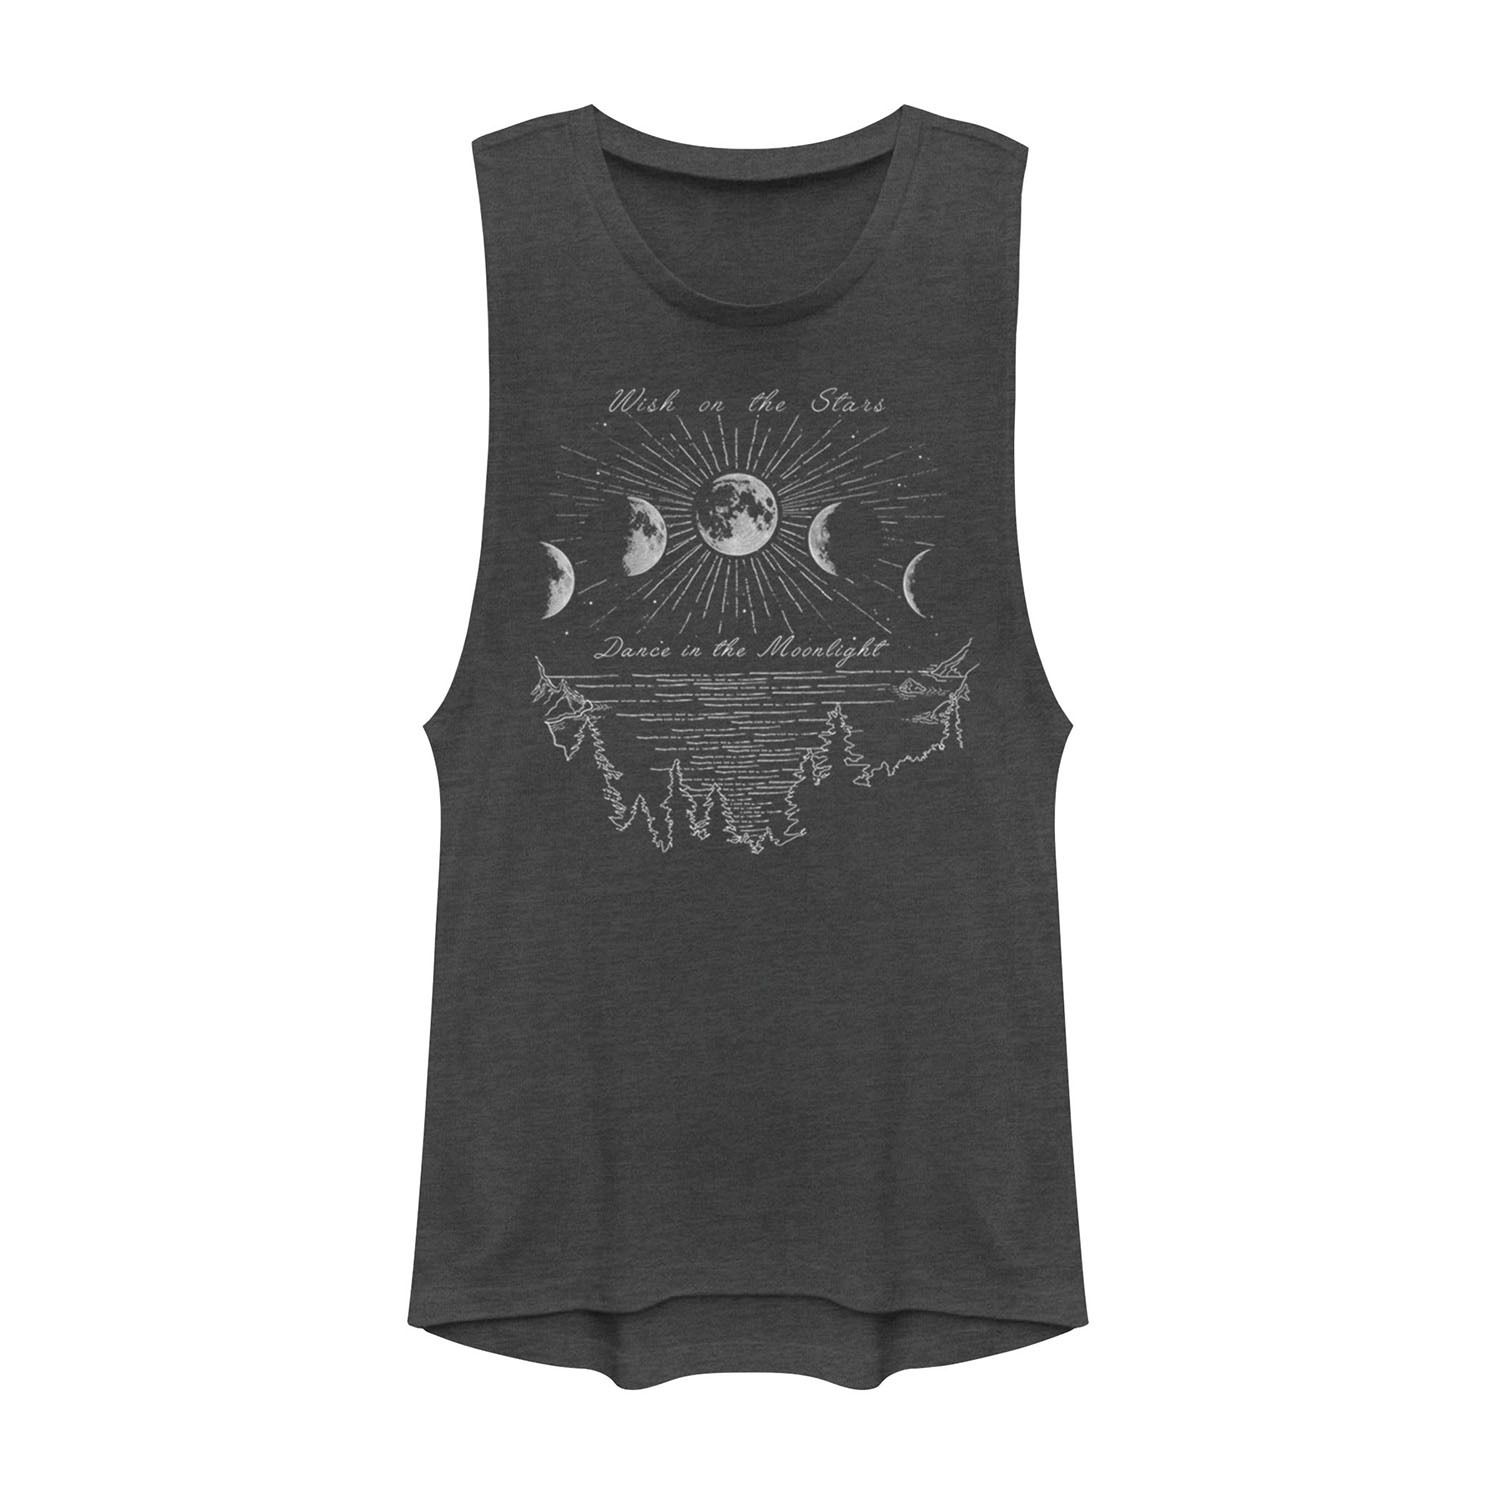 Юниорская футболка с подтягиванием подбородка на сцене «Танец звезд в лунном свете» уэй маргарет танец в лунном свете